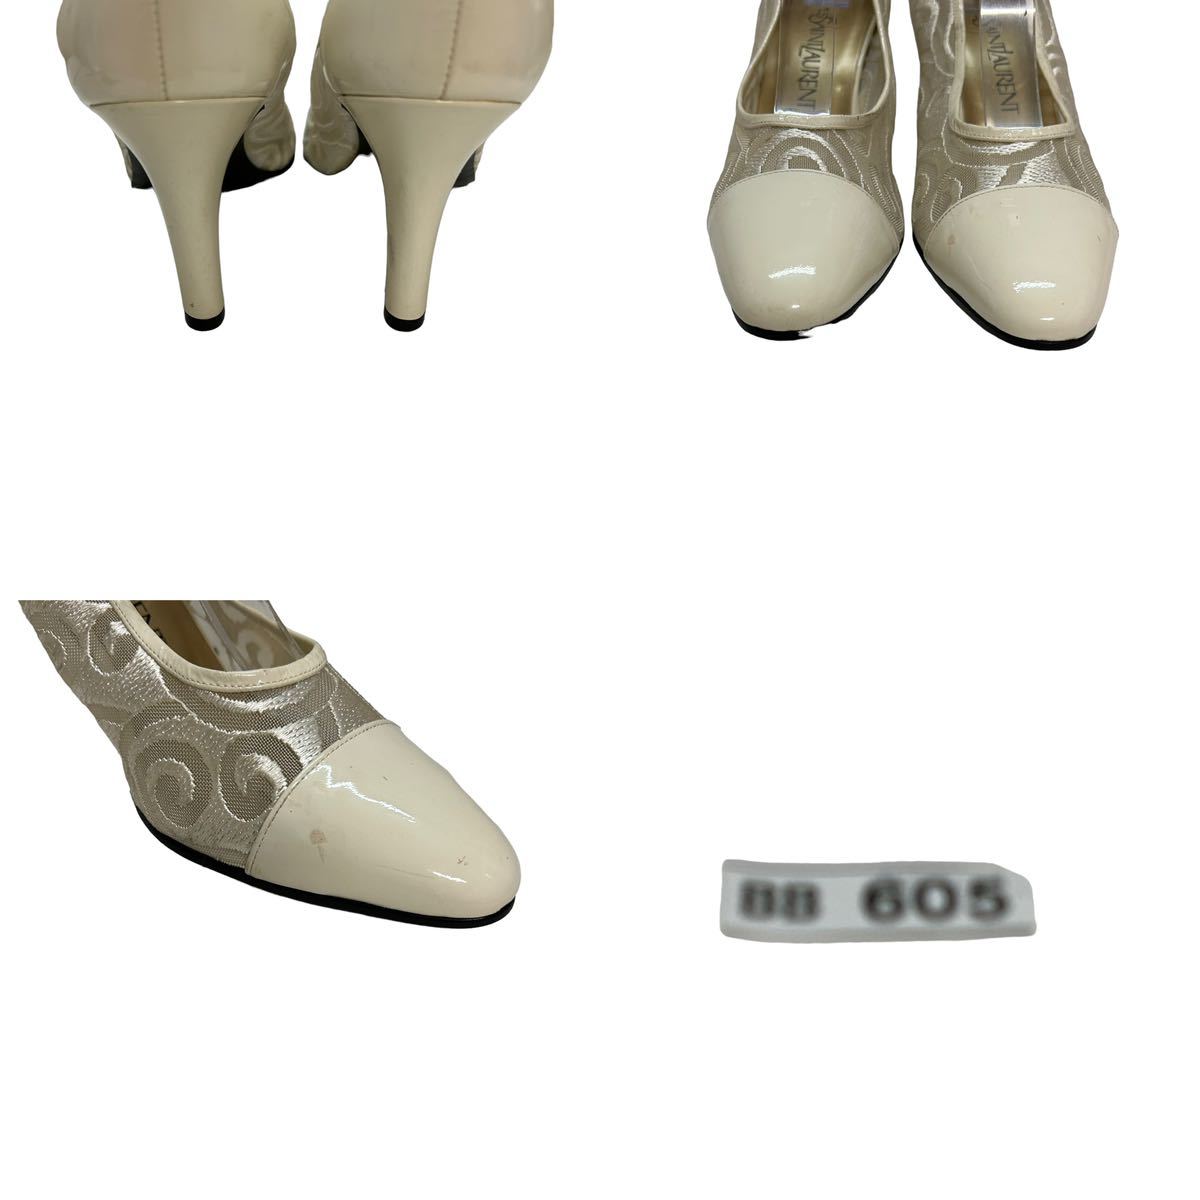 BB605 YVES SAINT LAURENT Eve солнечный rolan женский туфли-лодочки 35.5 примерно 22.5cm белый прозрачный эмаль 